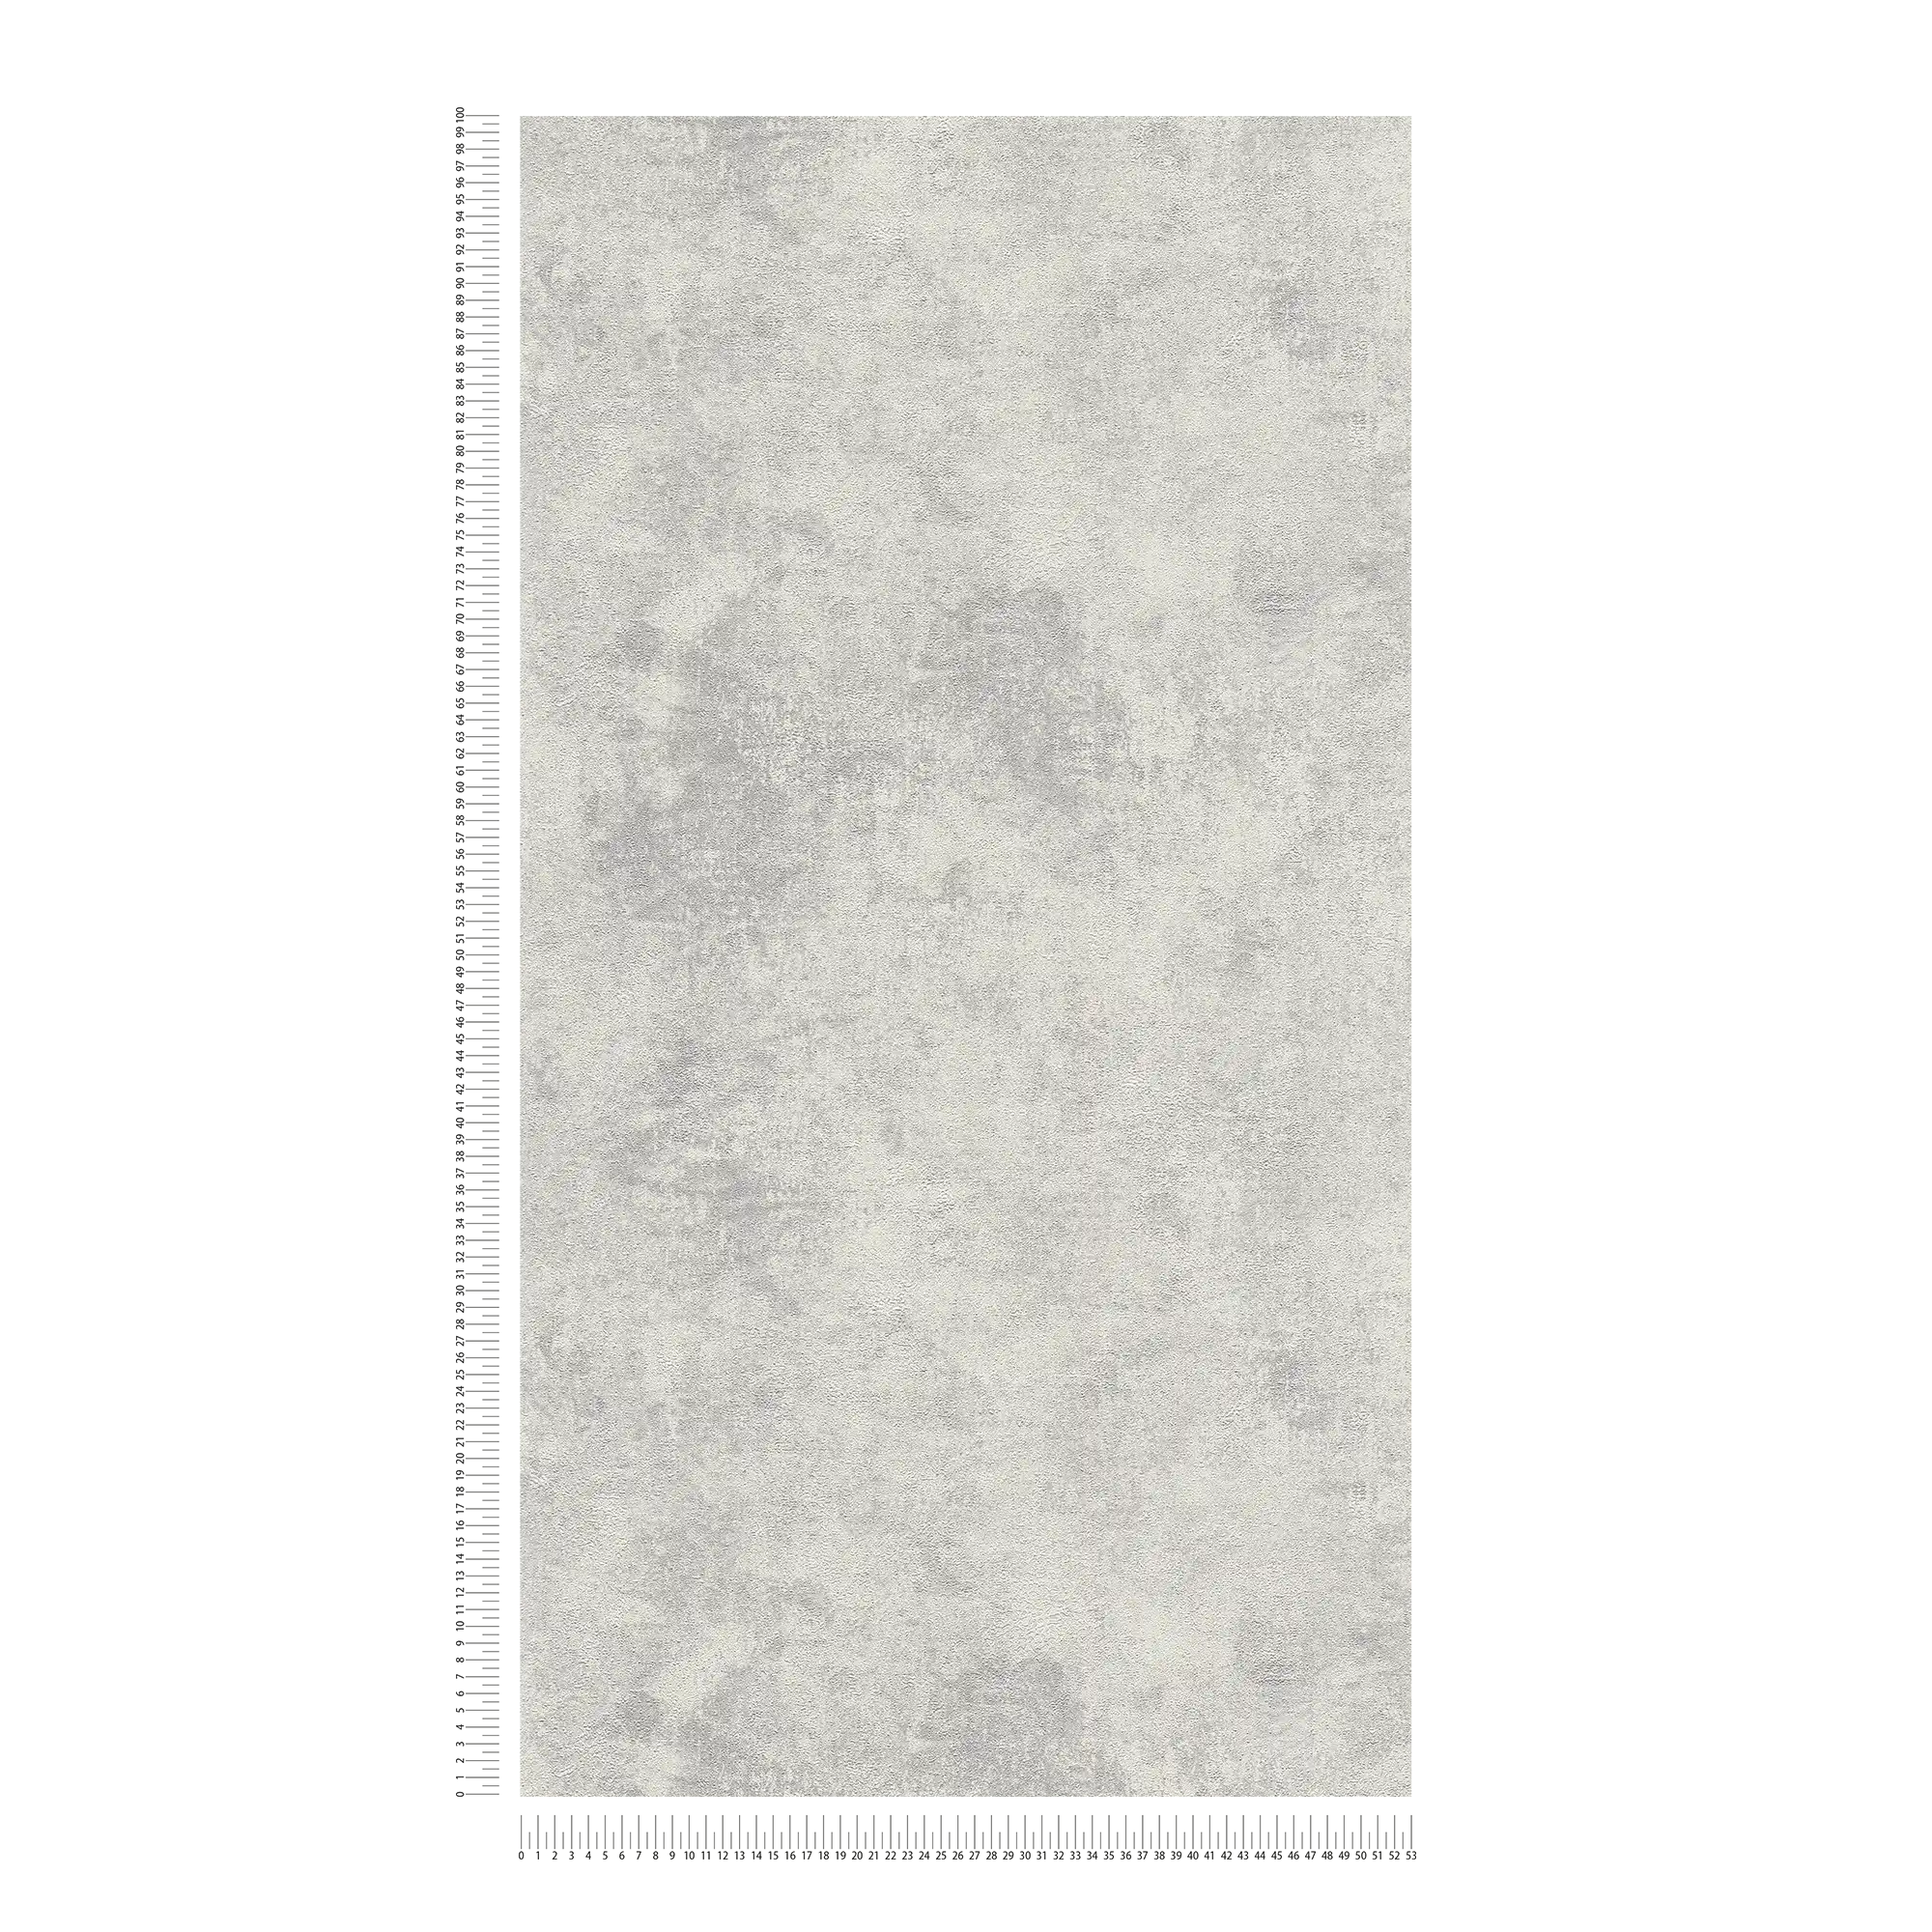             Papeles pintados no tejidos con aspecto de yeso y textura - gris, plata
        